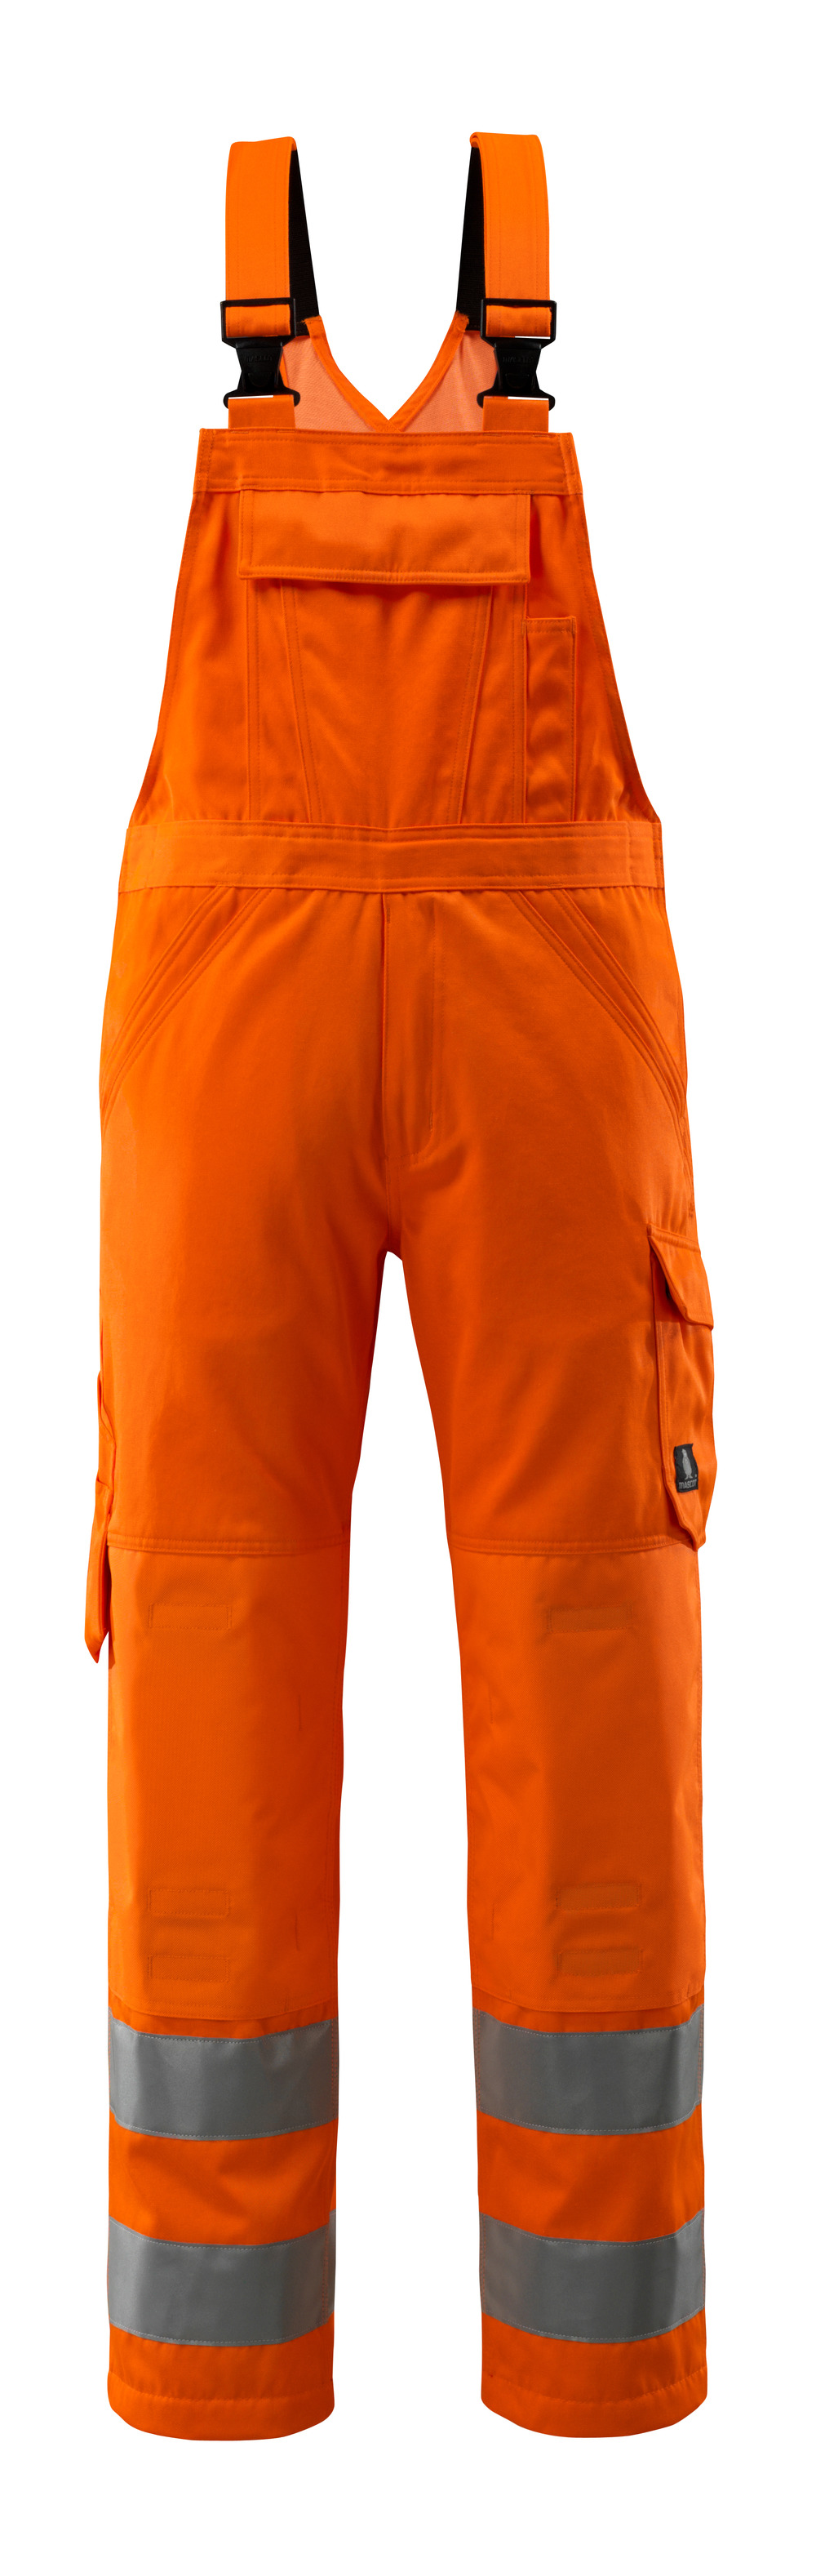 MASCOT-Warnschutz, Warn-Latzhose, Devonport,  Lg. 76 cm, 290 g/m², orange

